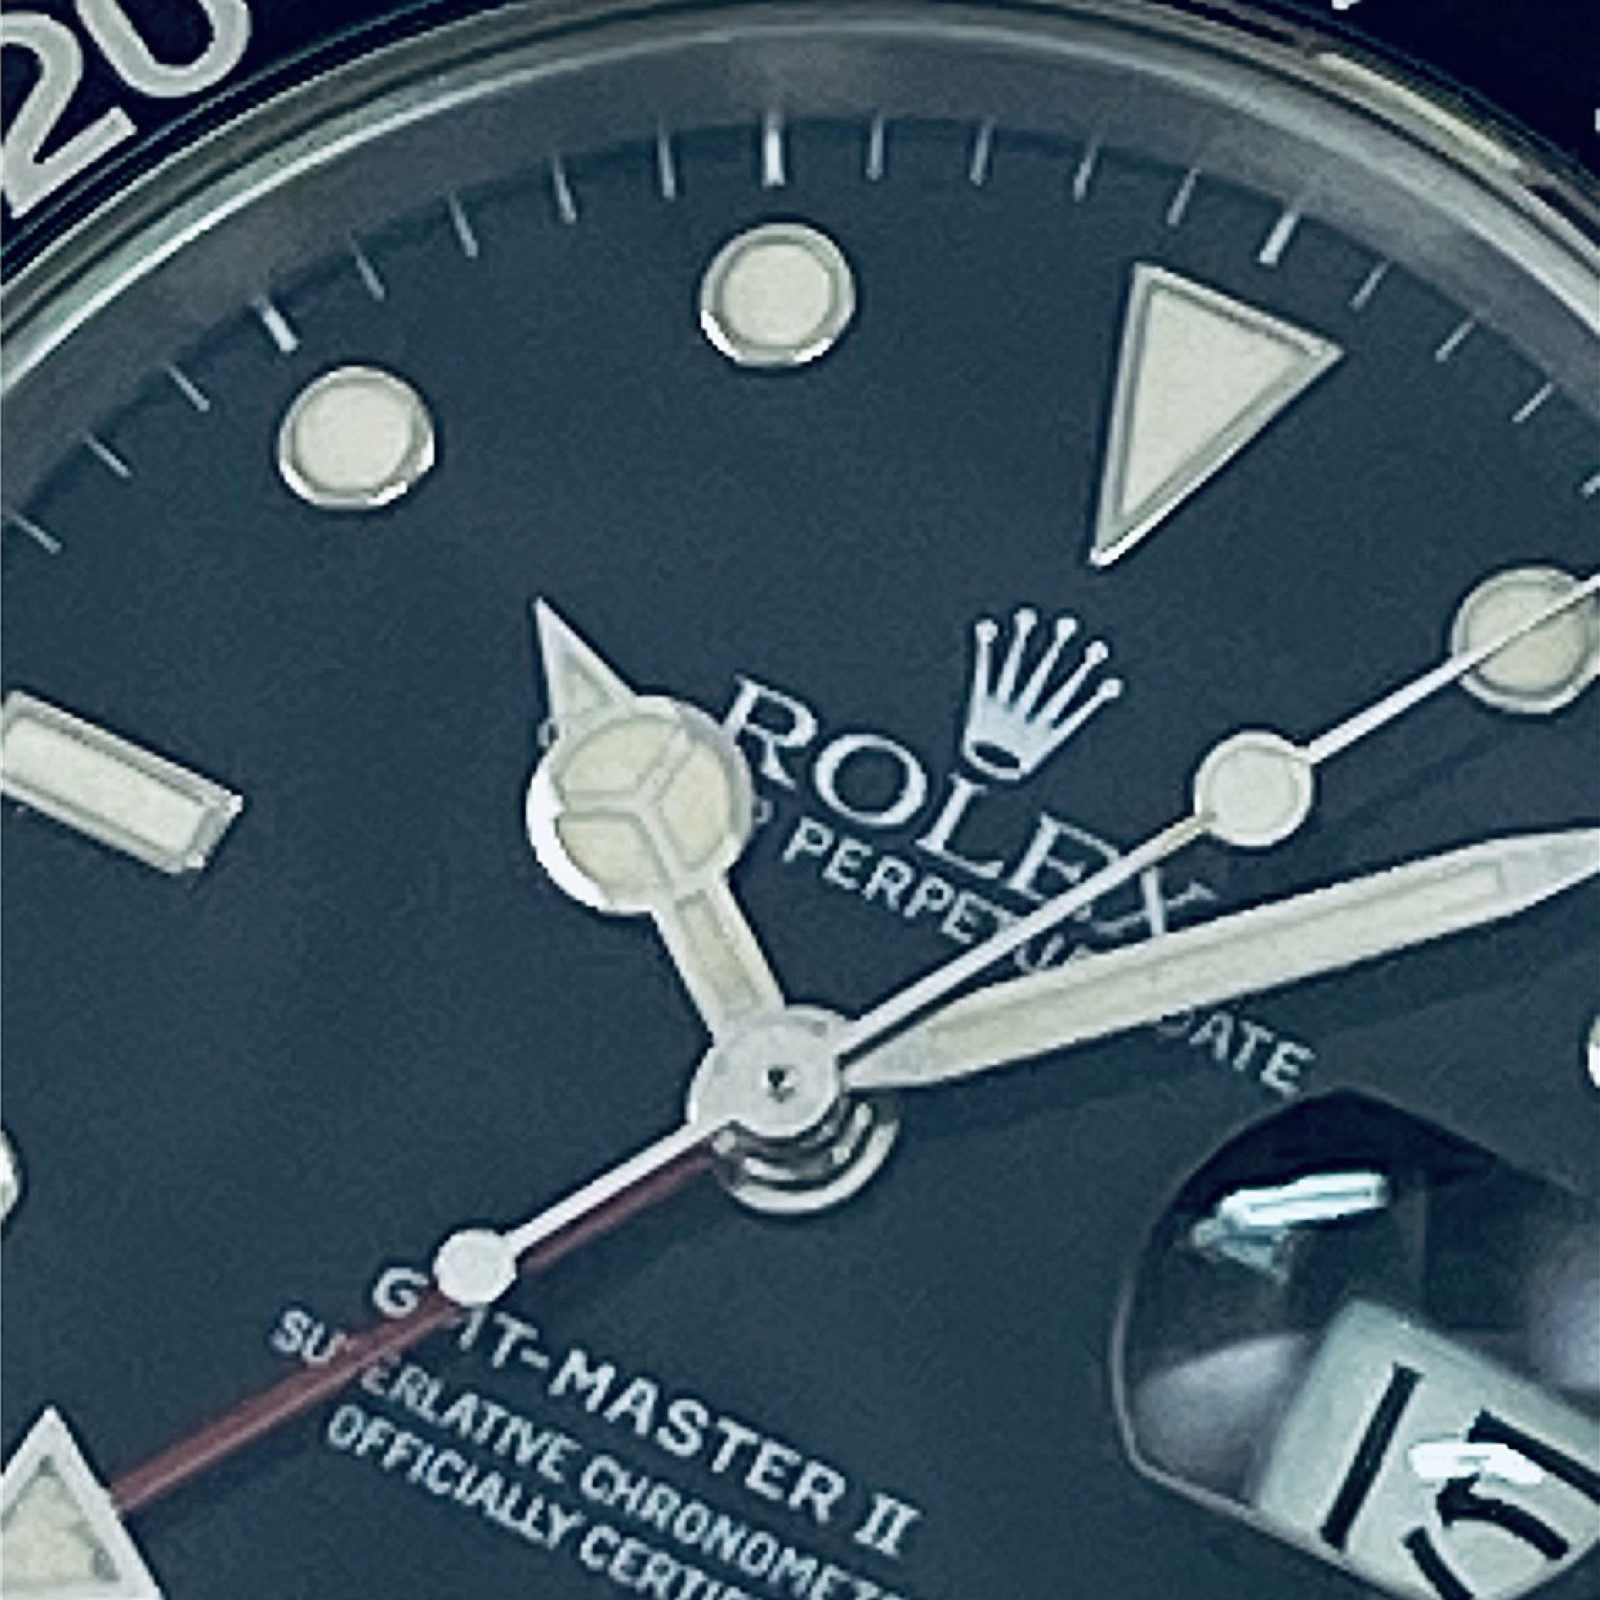 1986 Rolex GMT-Master II Ref. 16760 